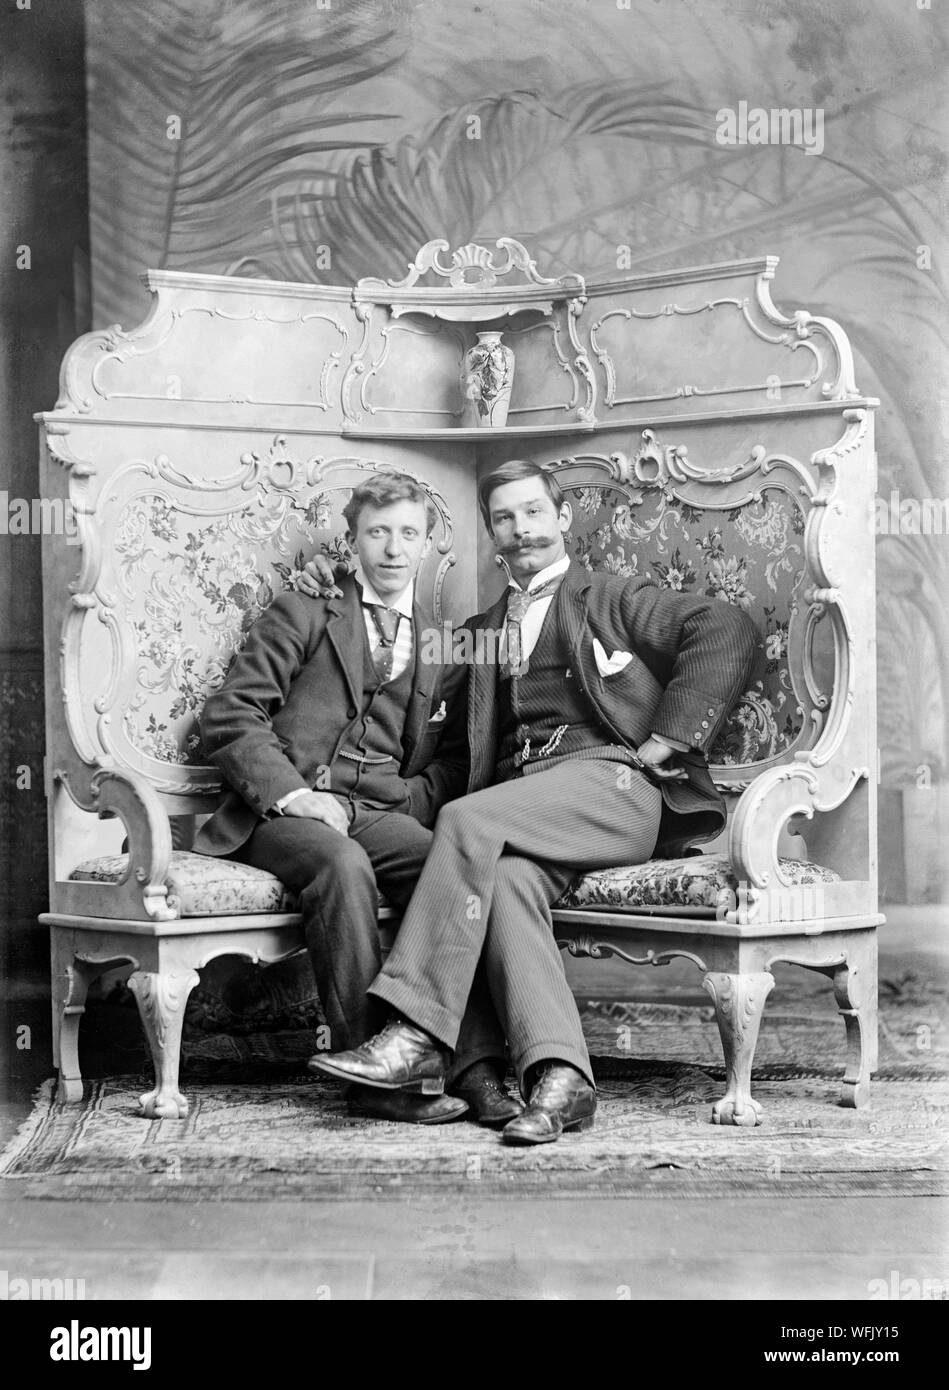 Un vintage style victorien ou au début de l'Edwardian Photographie noir et blanc montrant deux hommes, assis, posant dans un studio photographique. Un homme a une très grande moustache. La pose est très formel, mais également tout à fait détendue. Banque D'Images